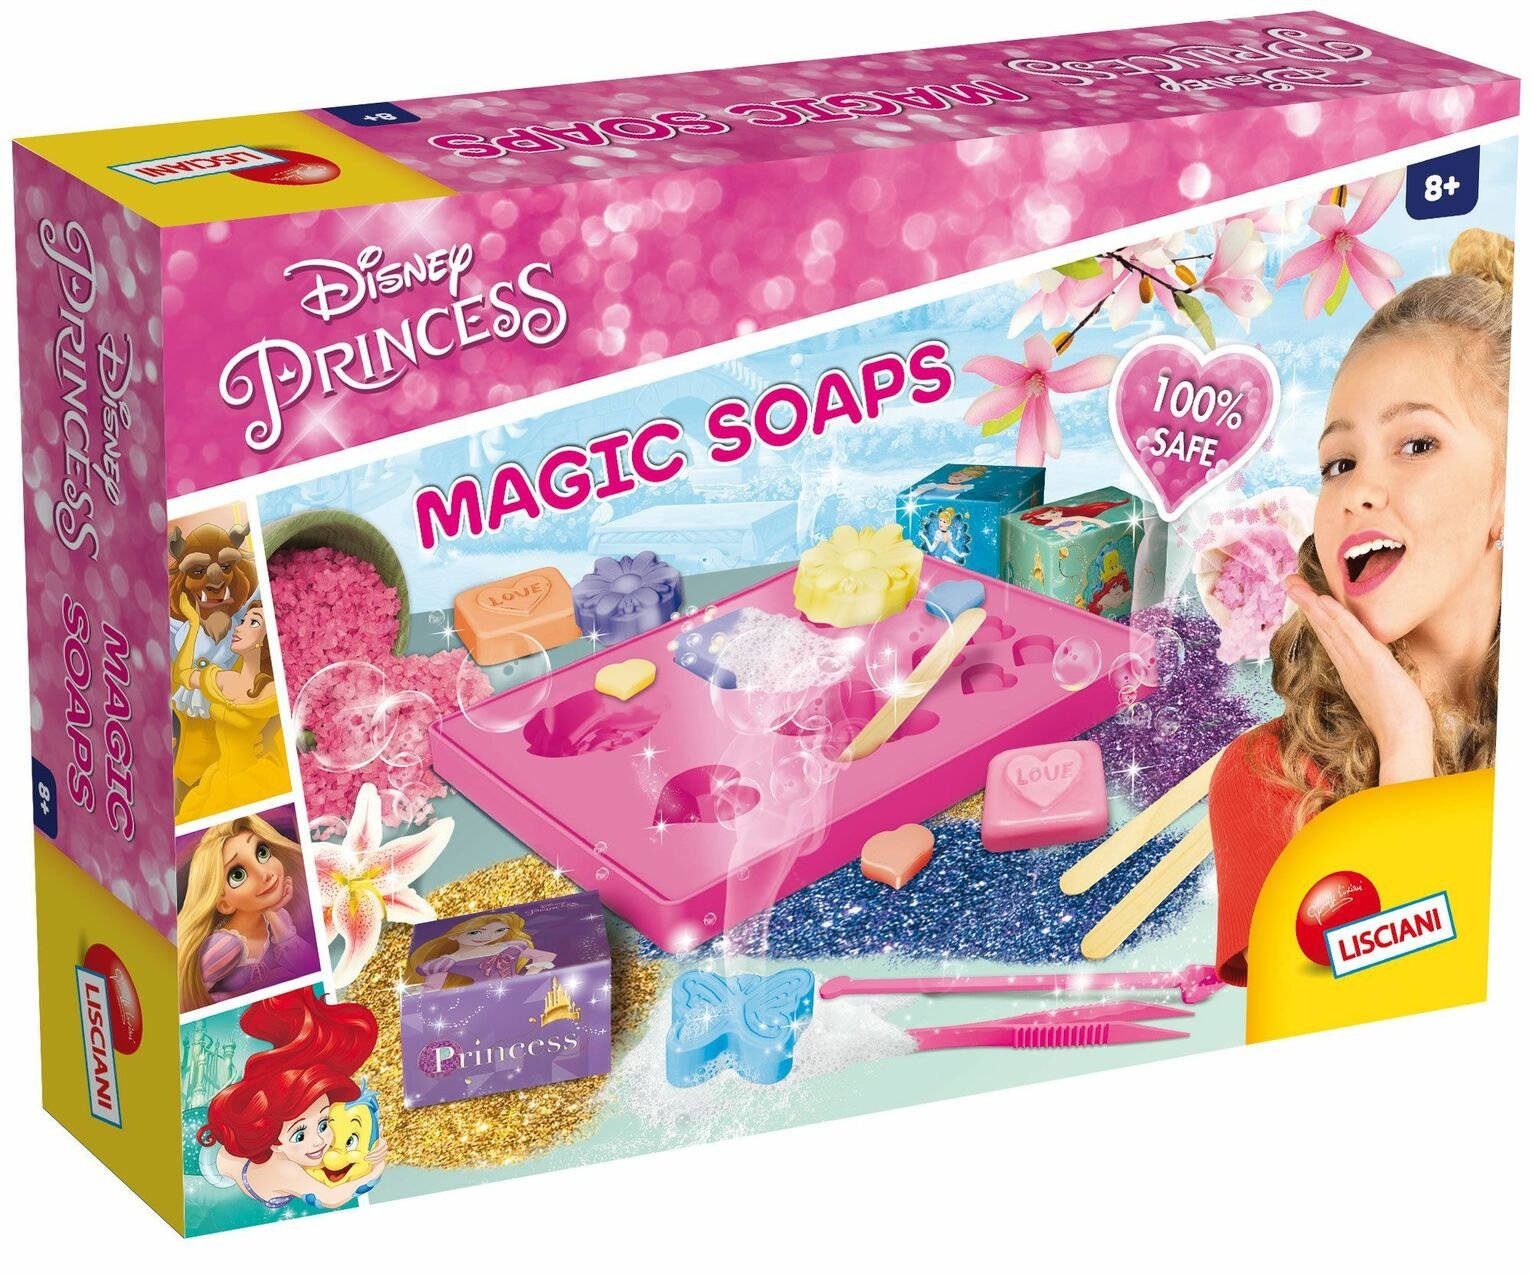 Disney Princess Magic Soaps Review